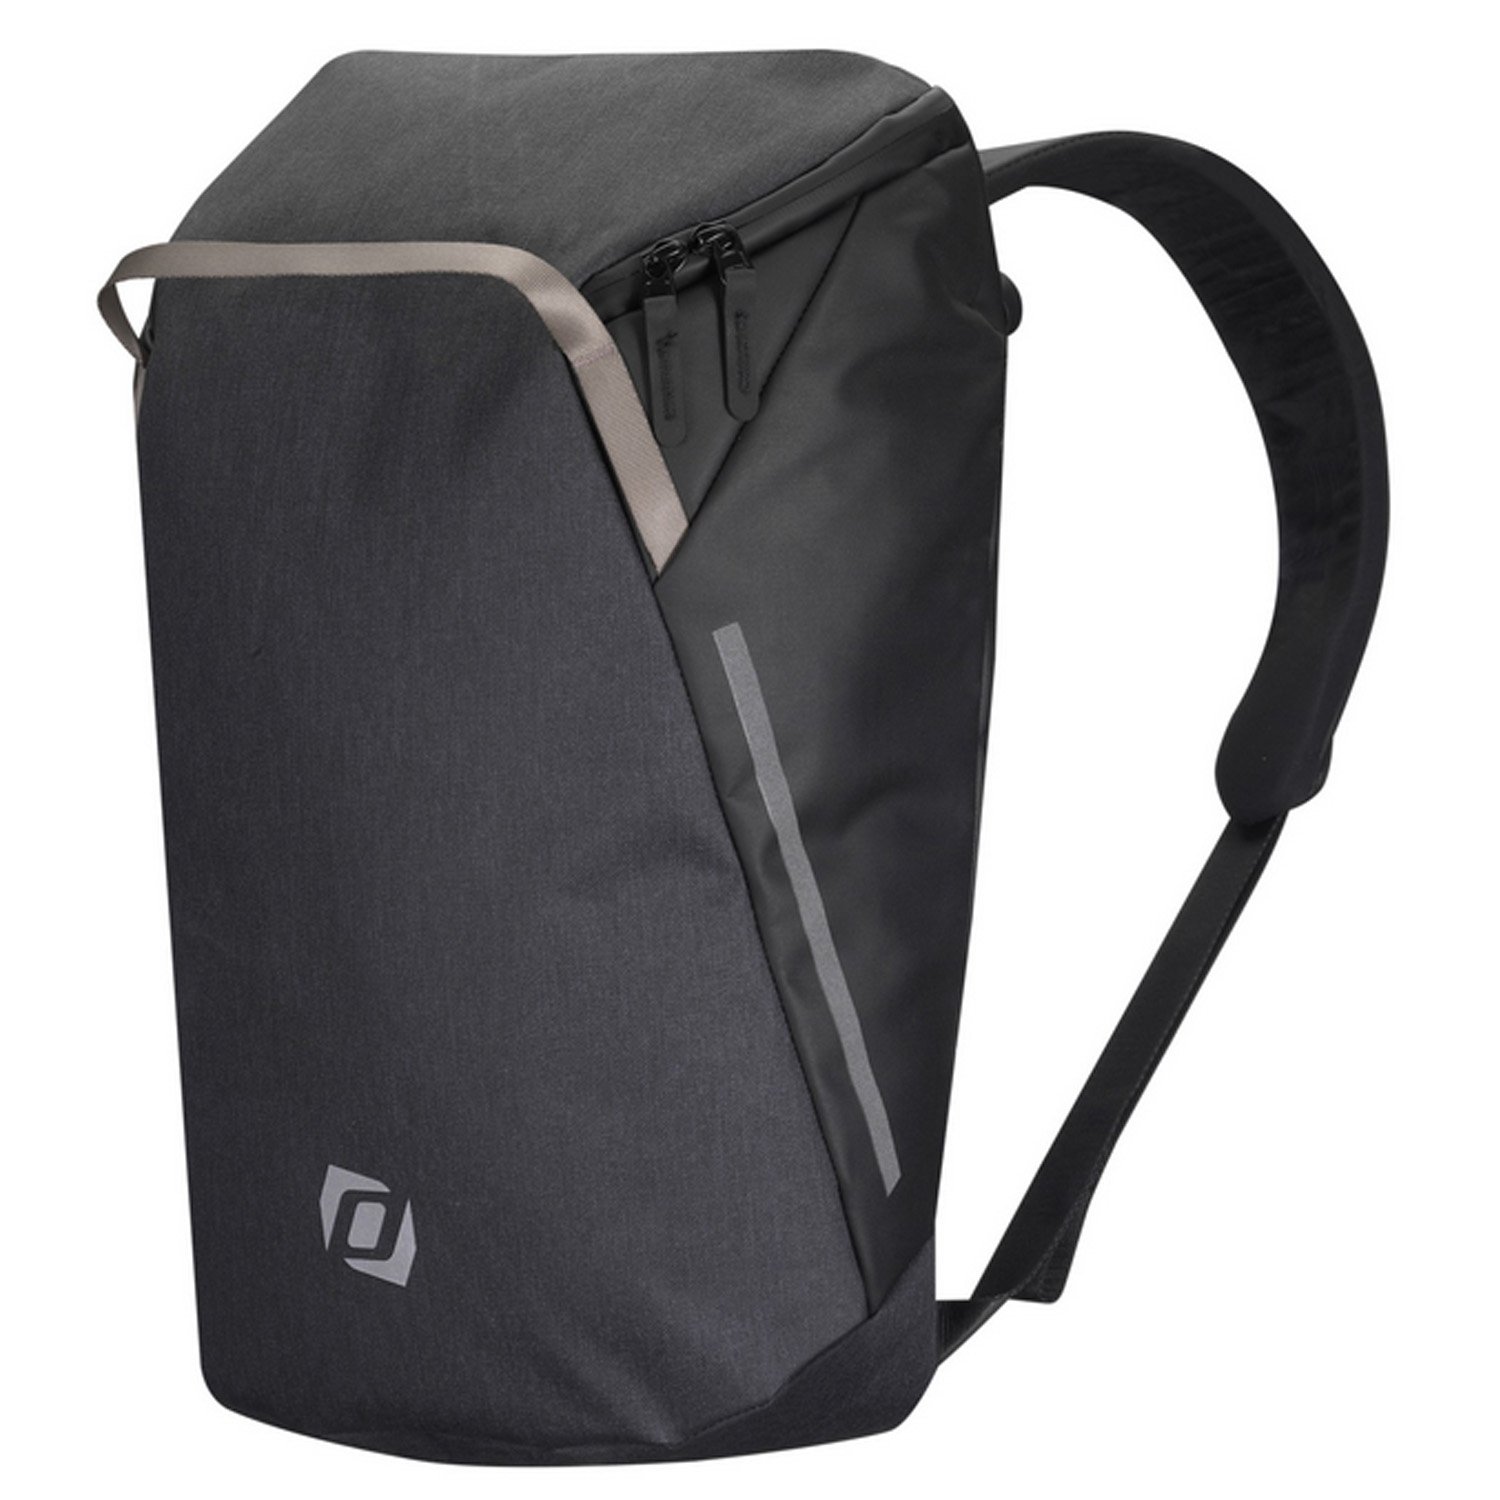 Велосумка Syncros Backpack, для багажника, черный, ES281116-0001 велосумка syncros trunkbag 2 0 для багажника es289143 0001